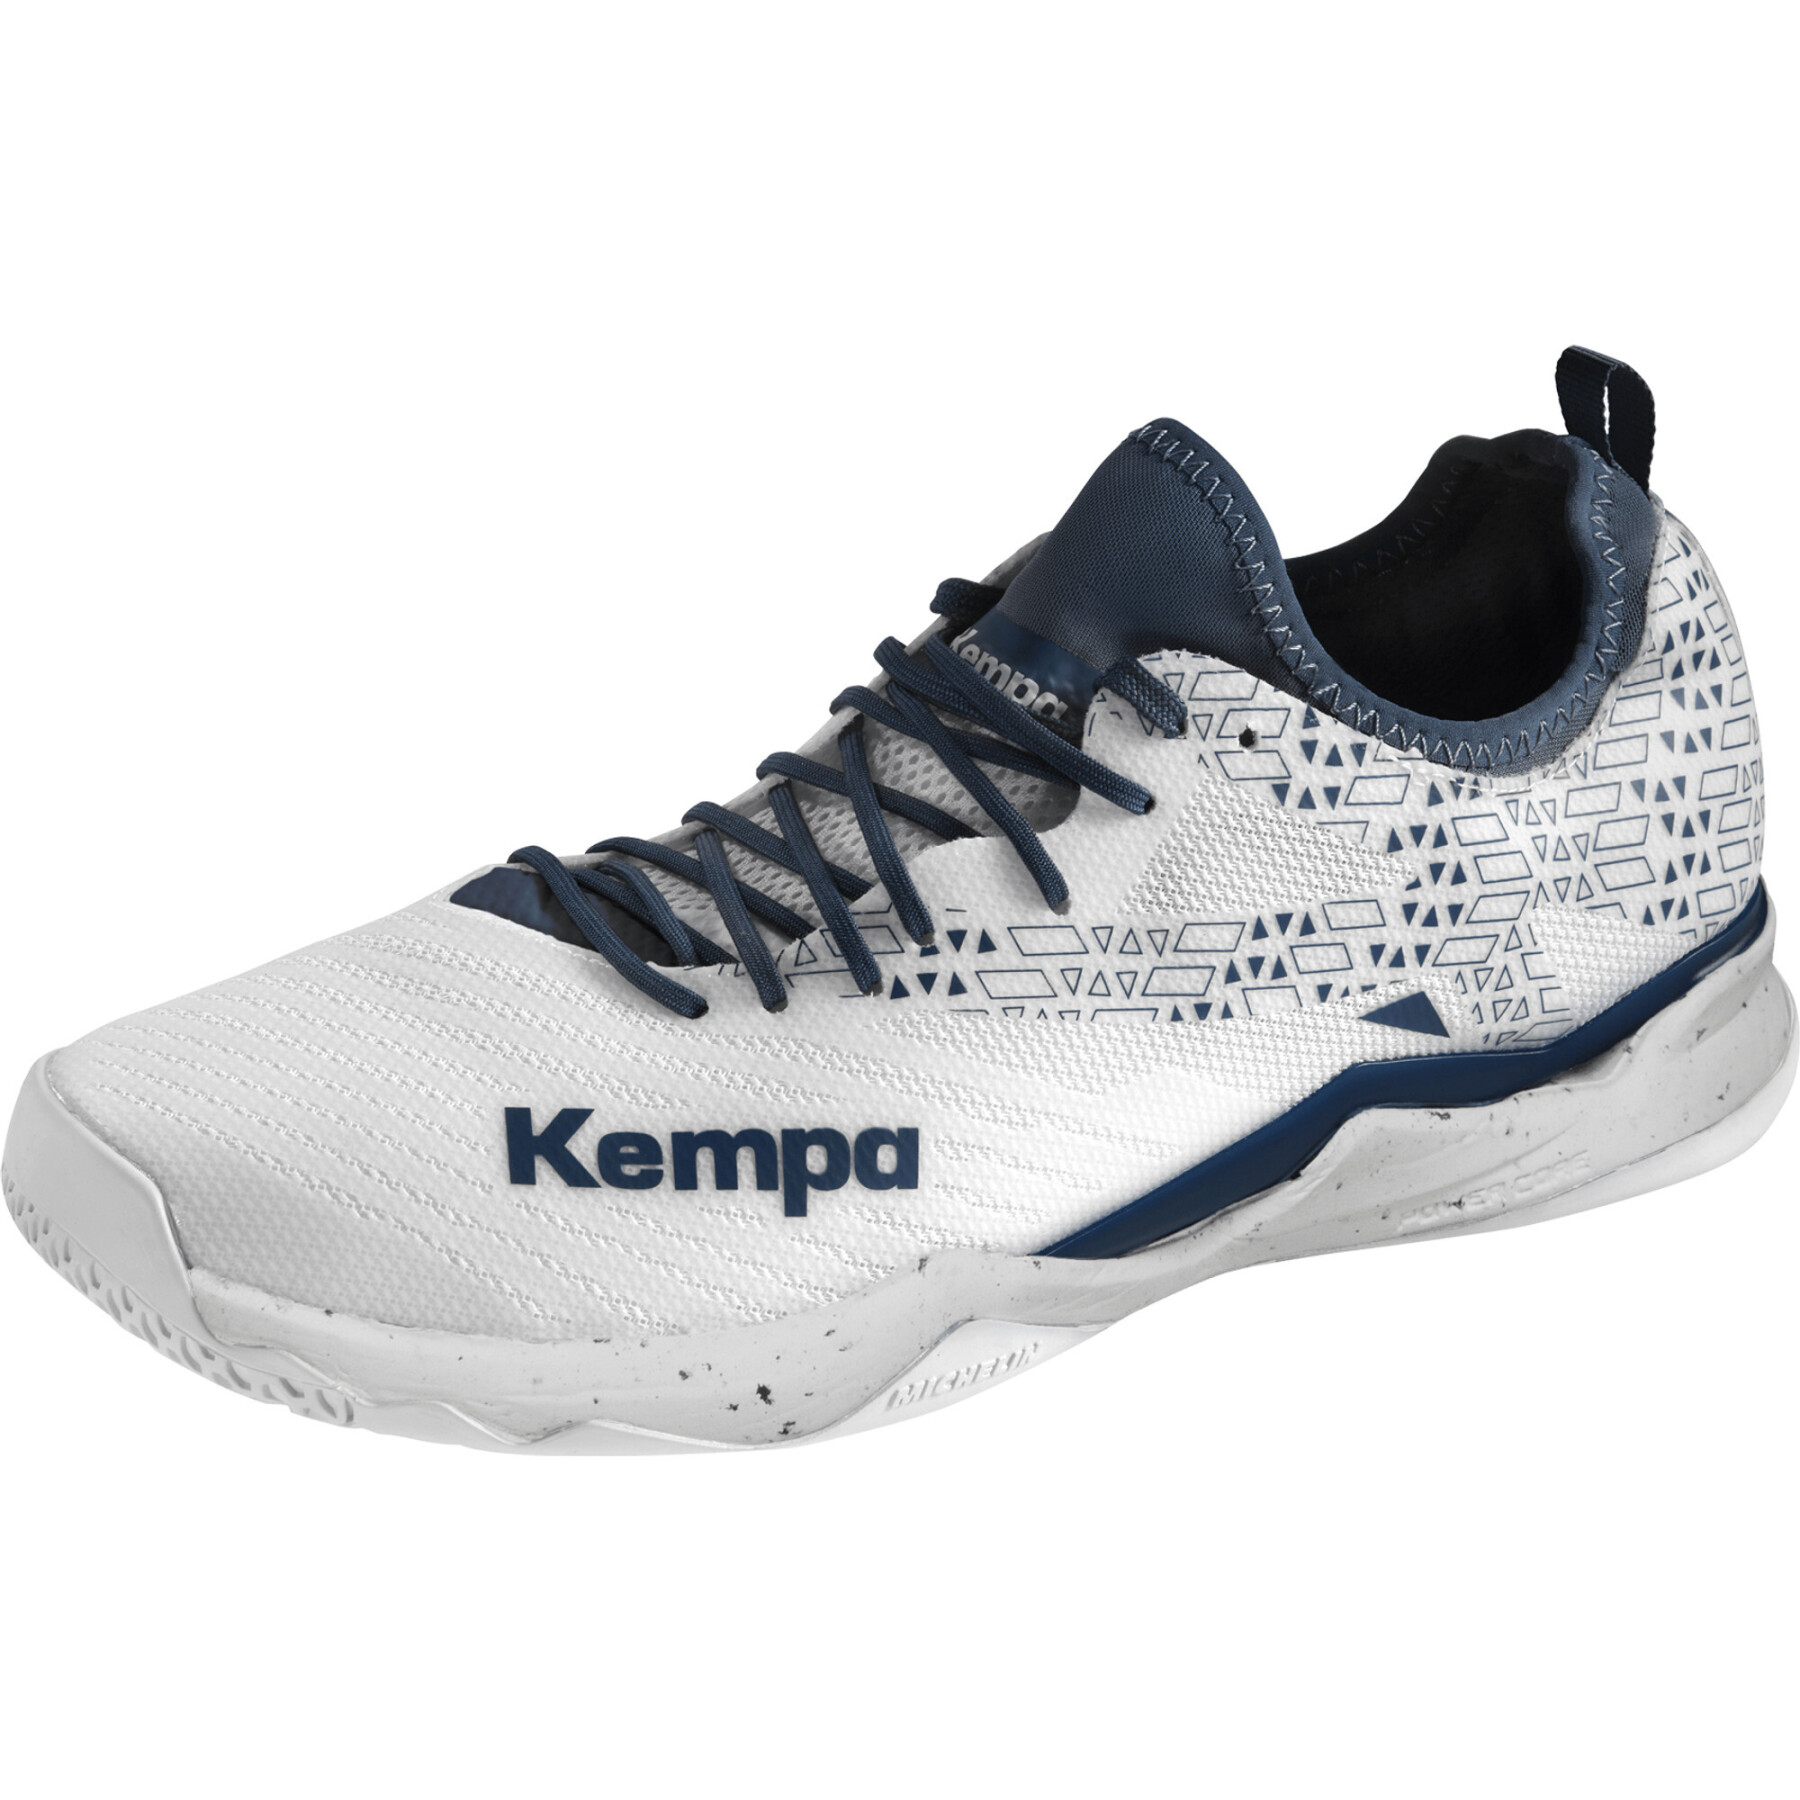 Indoor schoenen Kempa Wing Lite 2.0 Game Changer